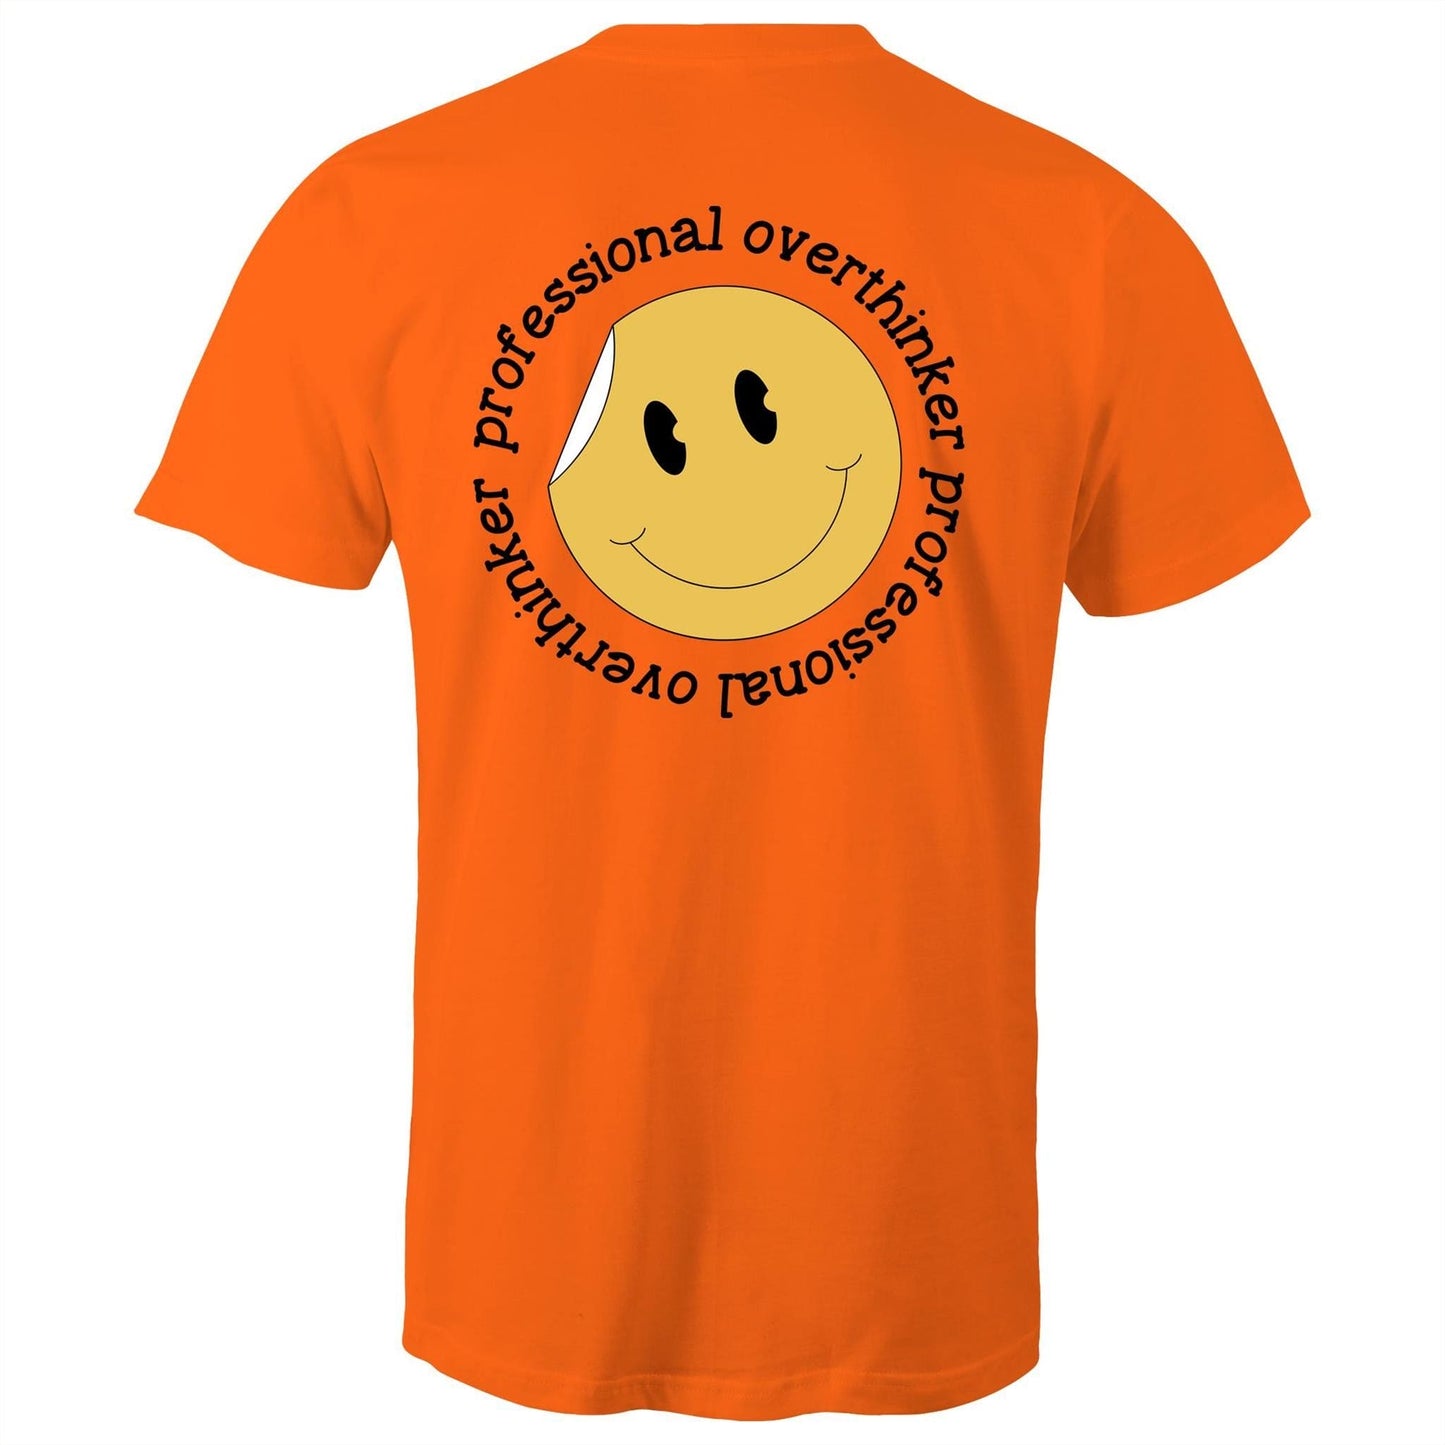 Mens T-Shirt - Professional Overthinker Smiley